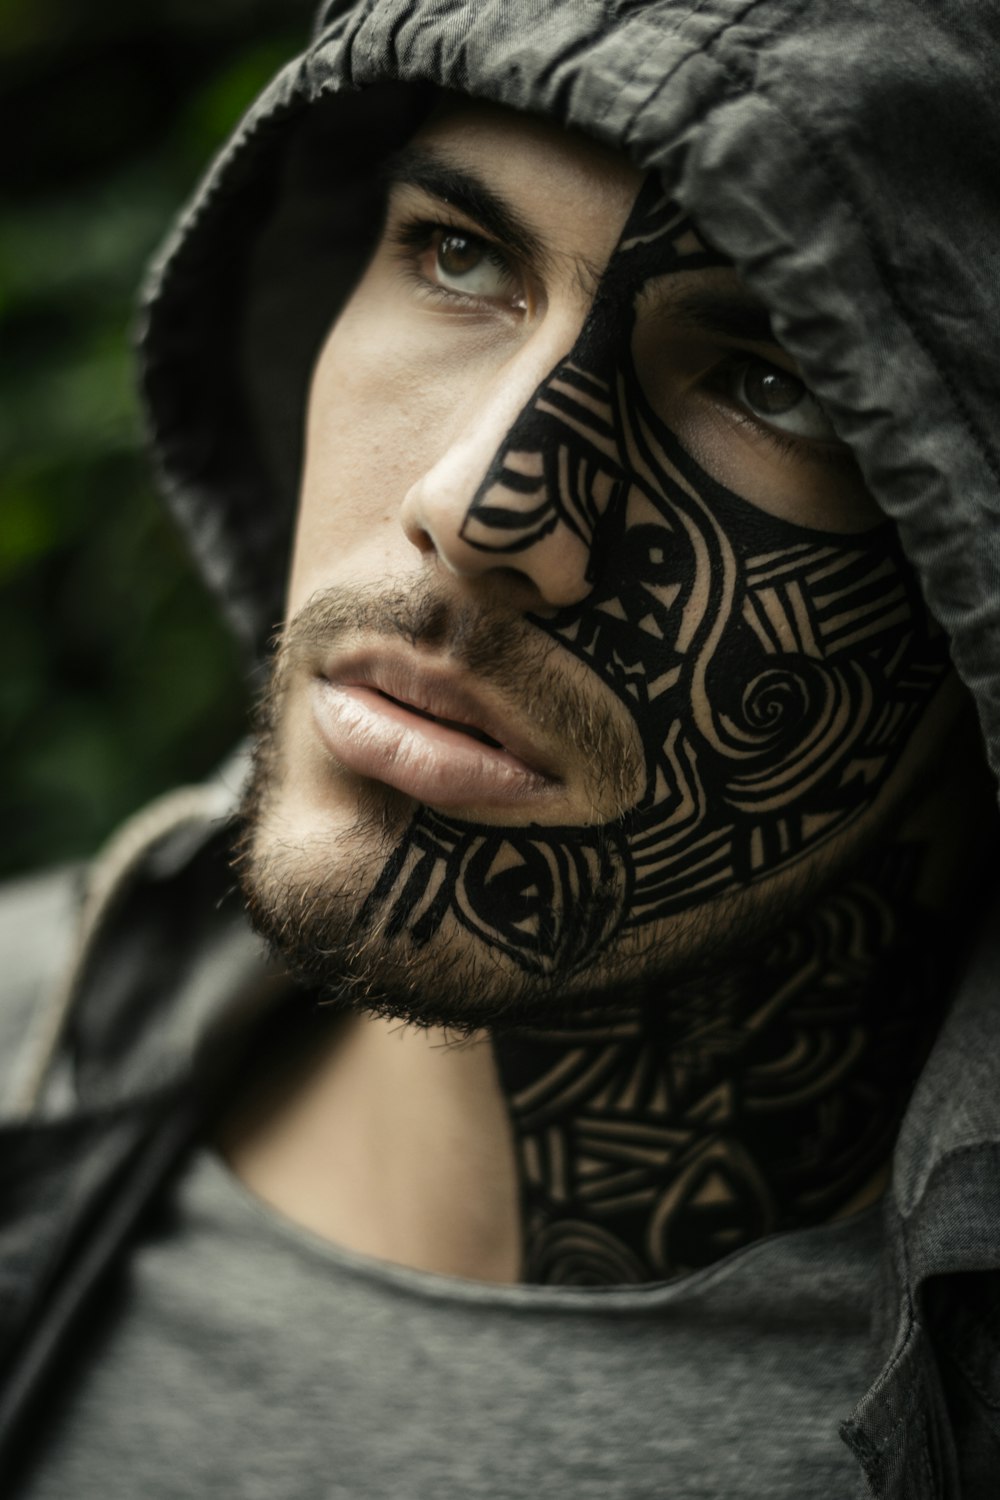 Mann mit Gesichtstätowierung trägt grauen Kapuzenpullover